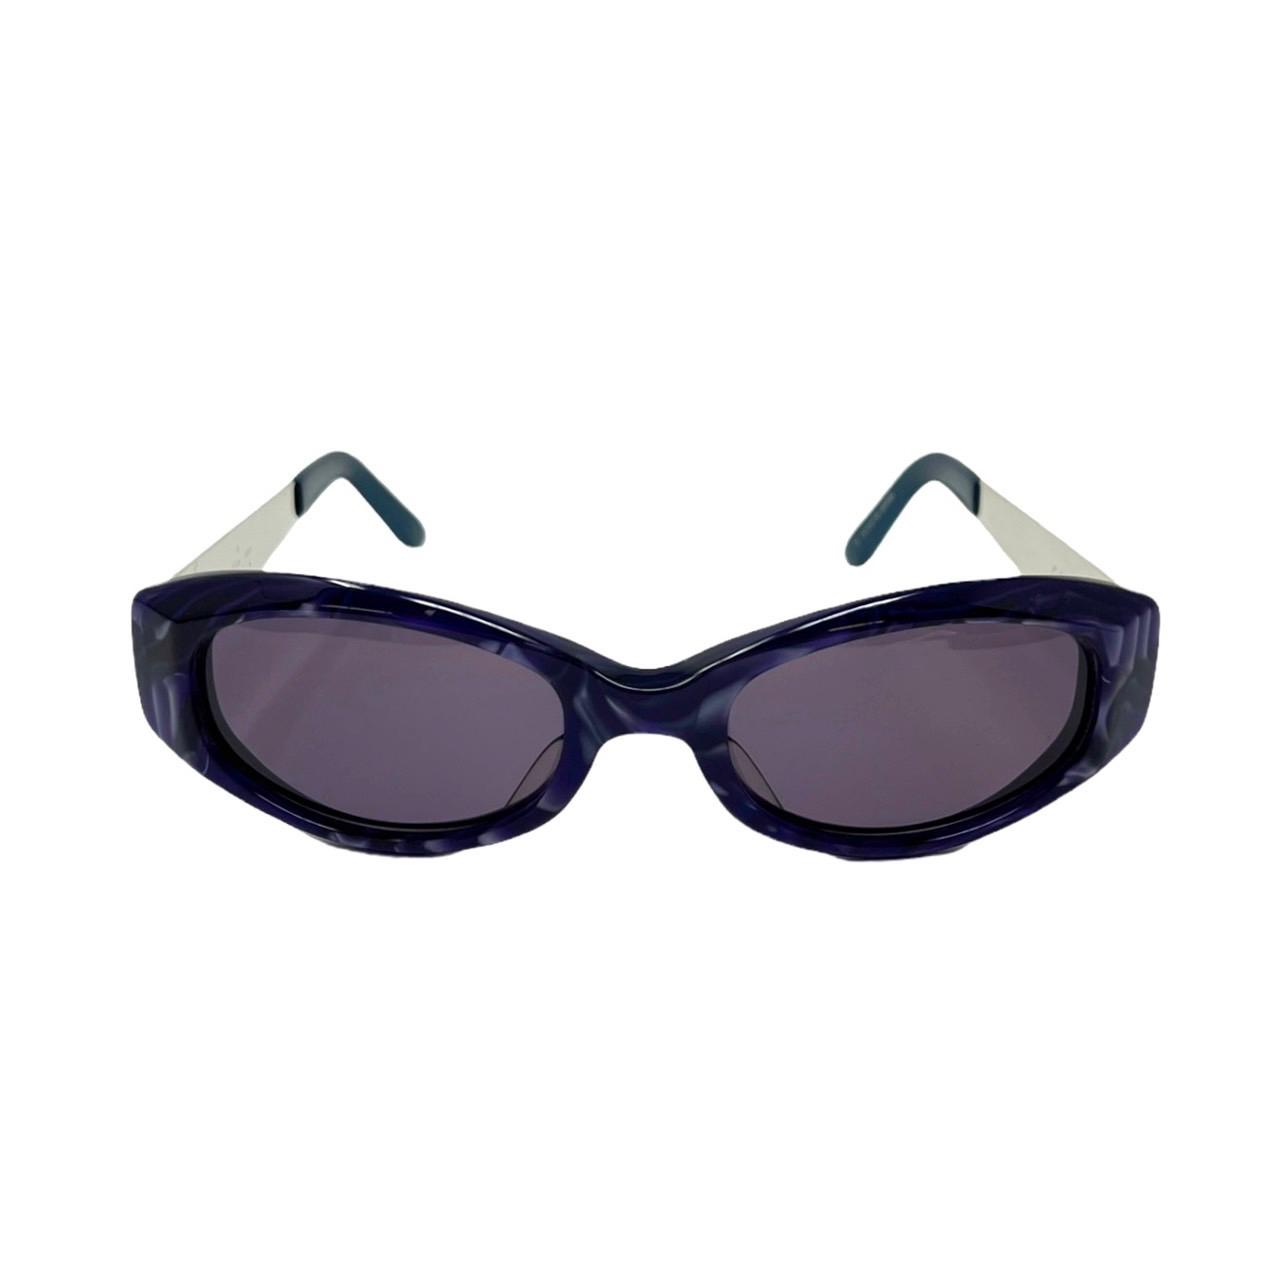 Jean Paul Gaultier Blue Mini Sunglasses